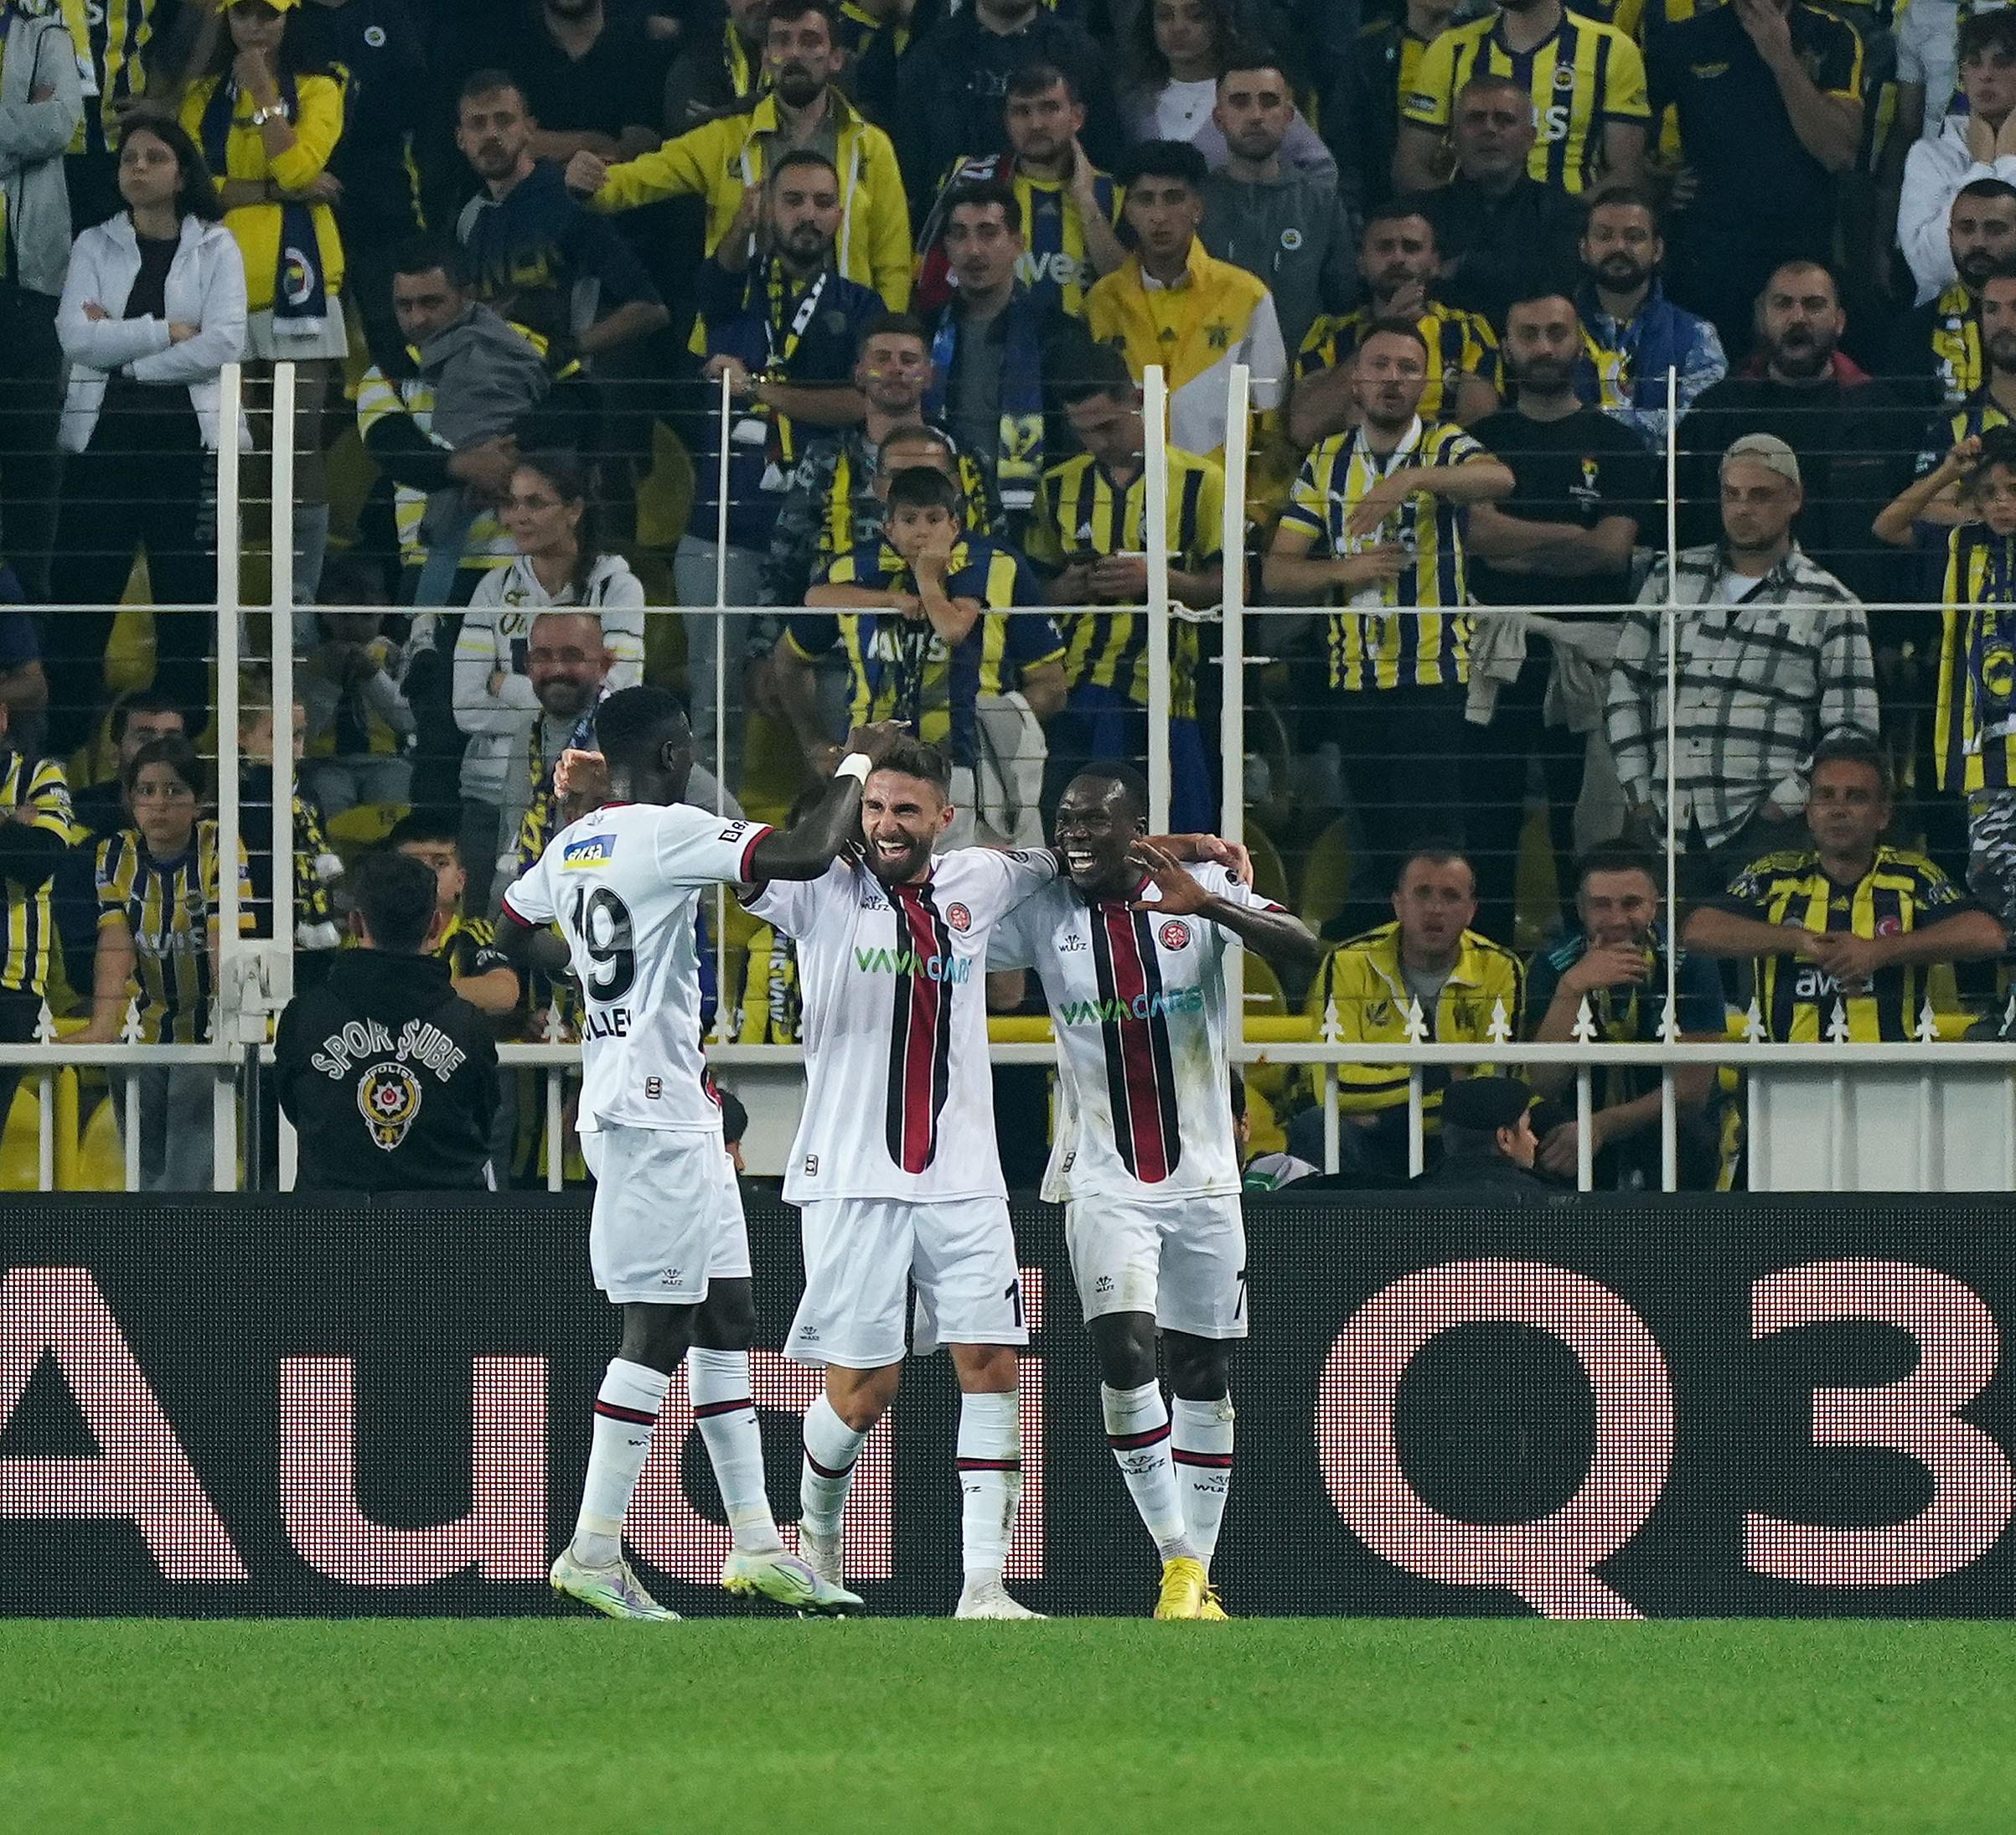 (ÖZET) Fenerbahçe-Fatih Karagümrük maç sonucu: 5-4